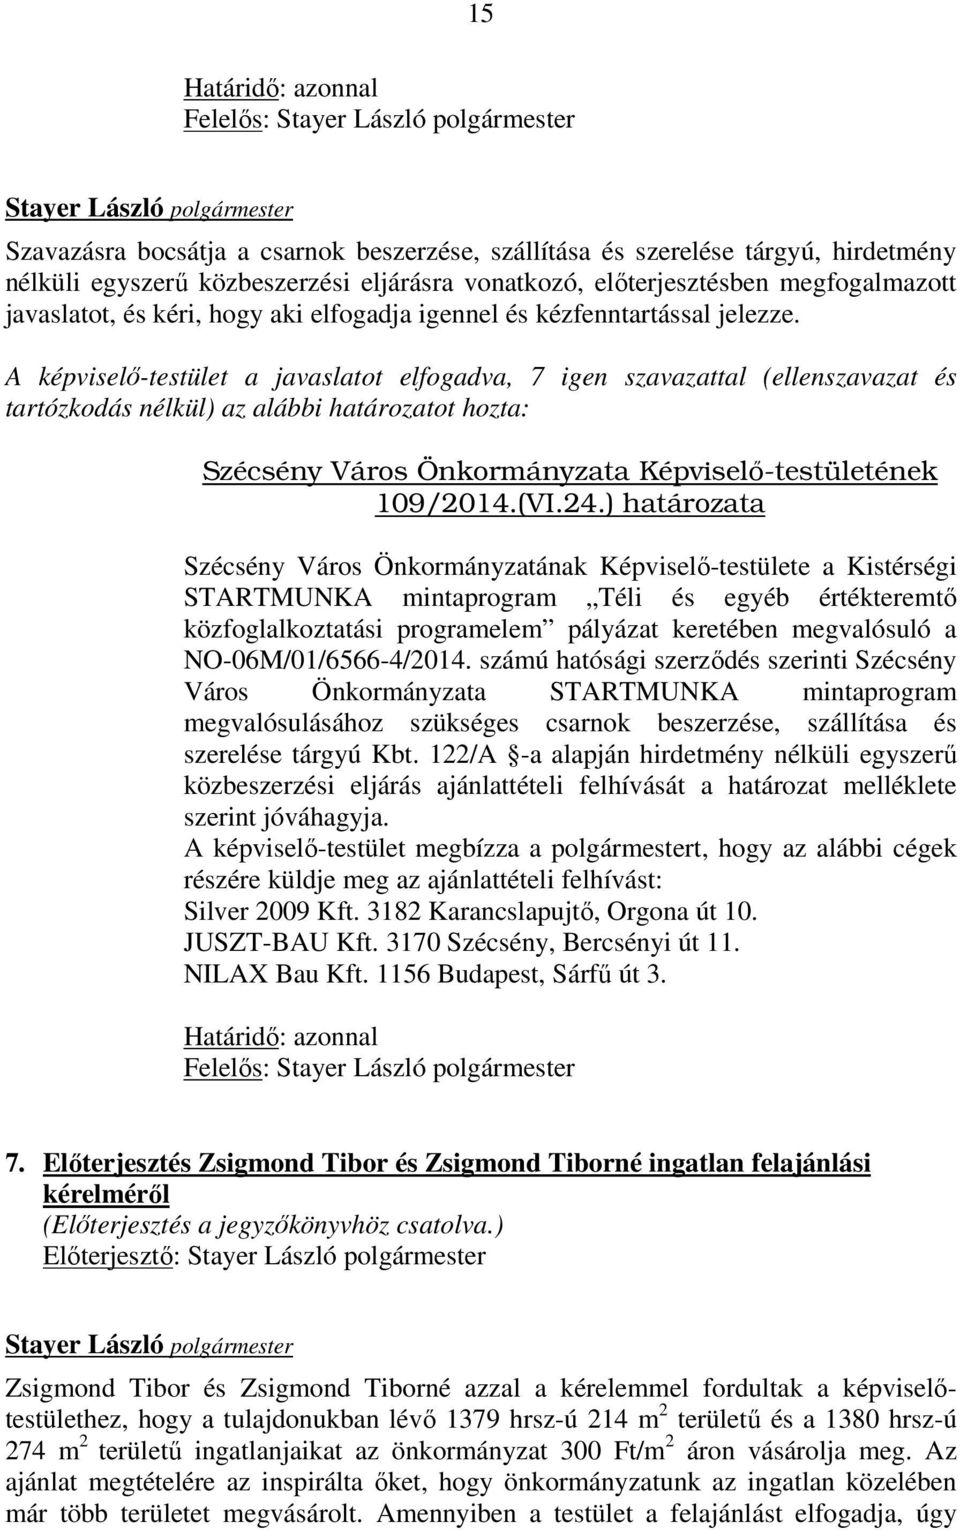 A képviselő-testület a javaslatot elfogadva, 7 igen szavazattal (ellenszavazat és tartózkodás nélkül) az alábbi határozatot hozta: Szécsény Város Önkormányzata Képviselı-testületének 109/2014.(VI.24.